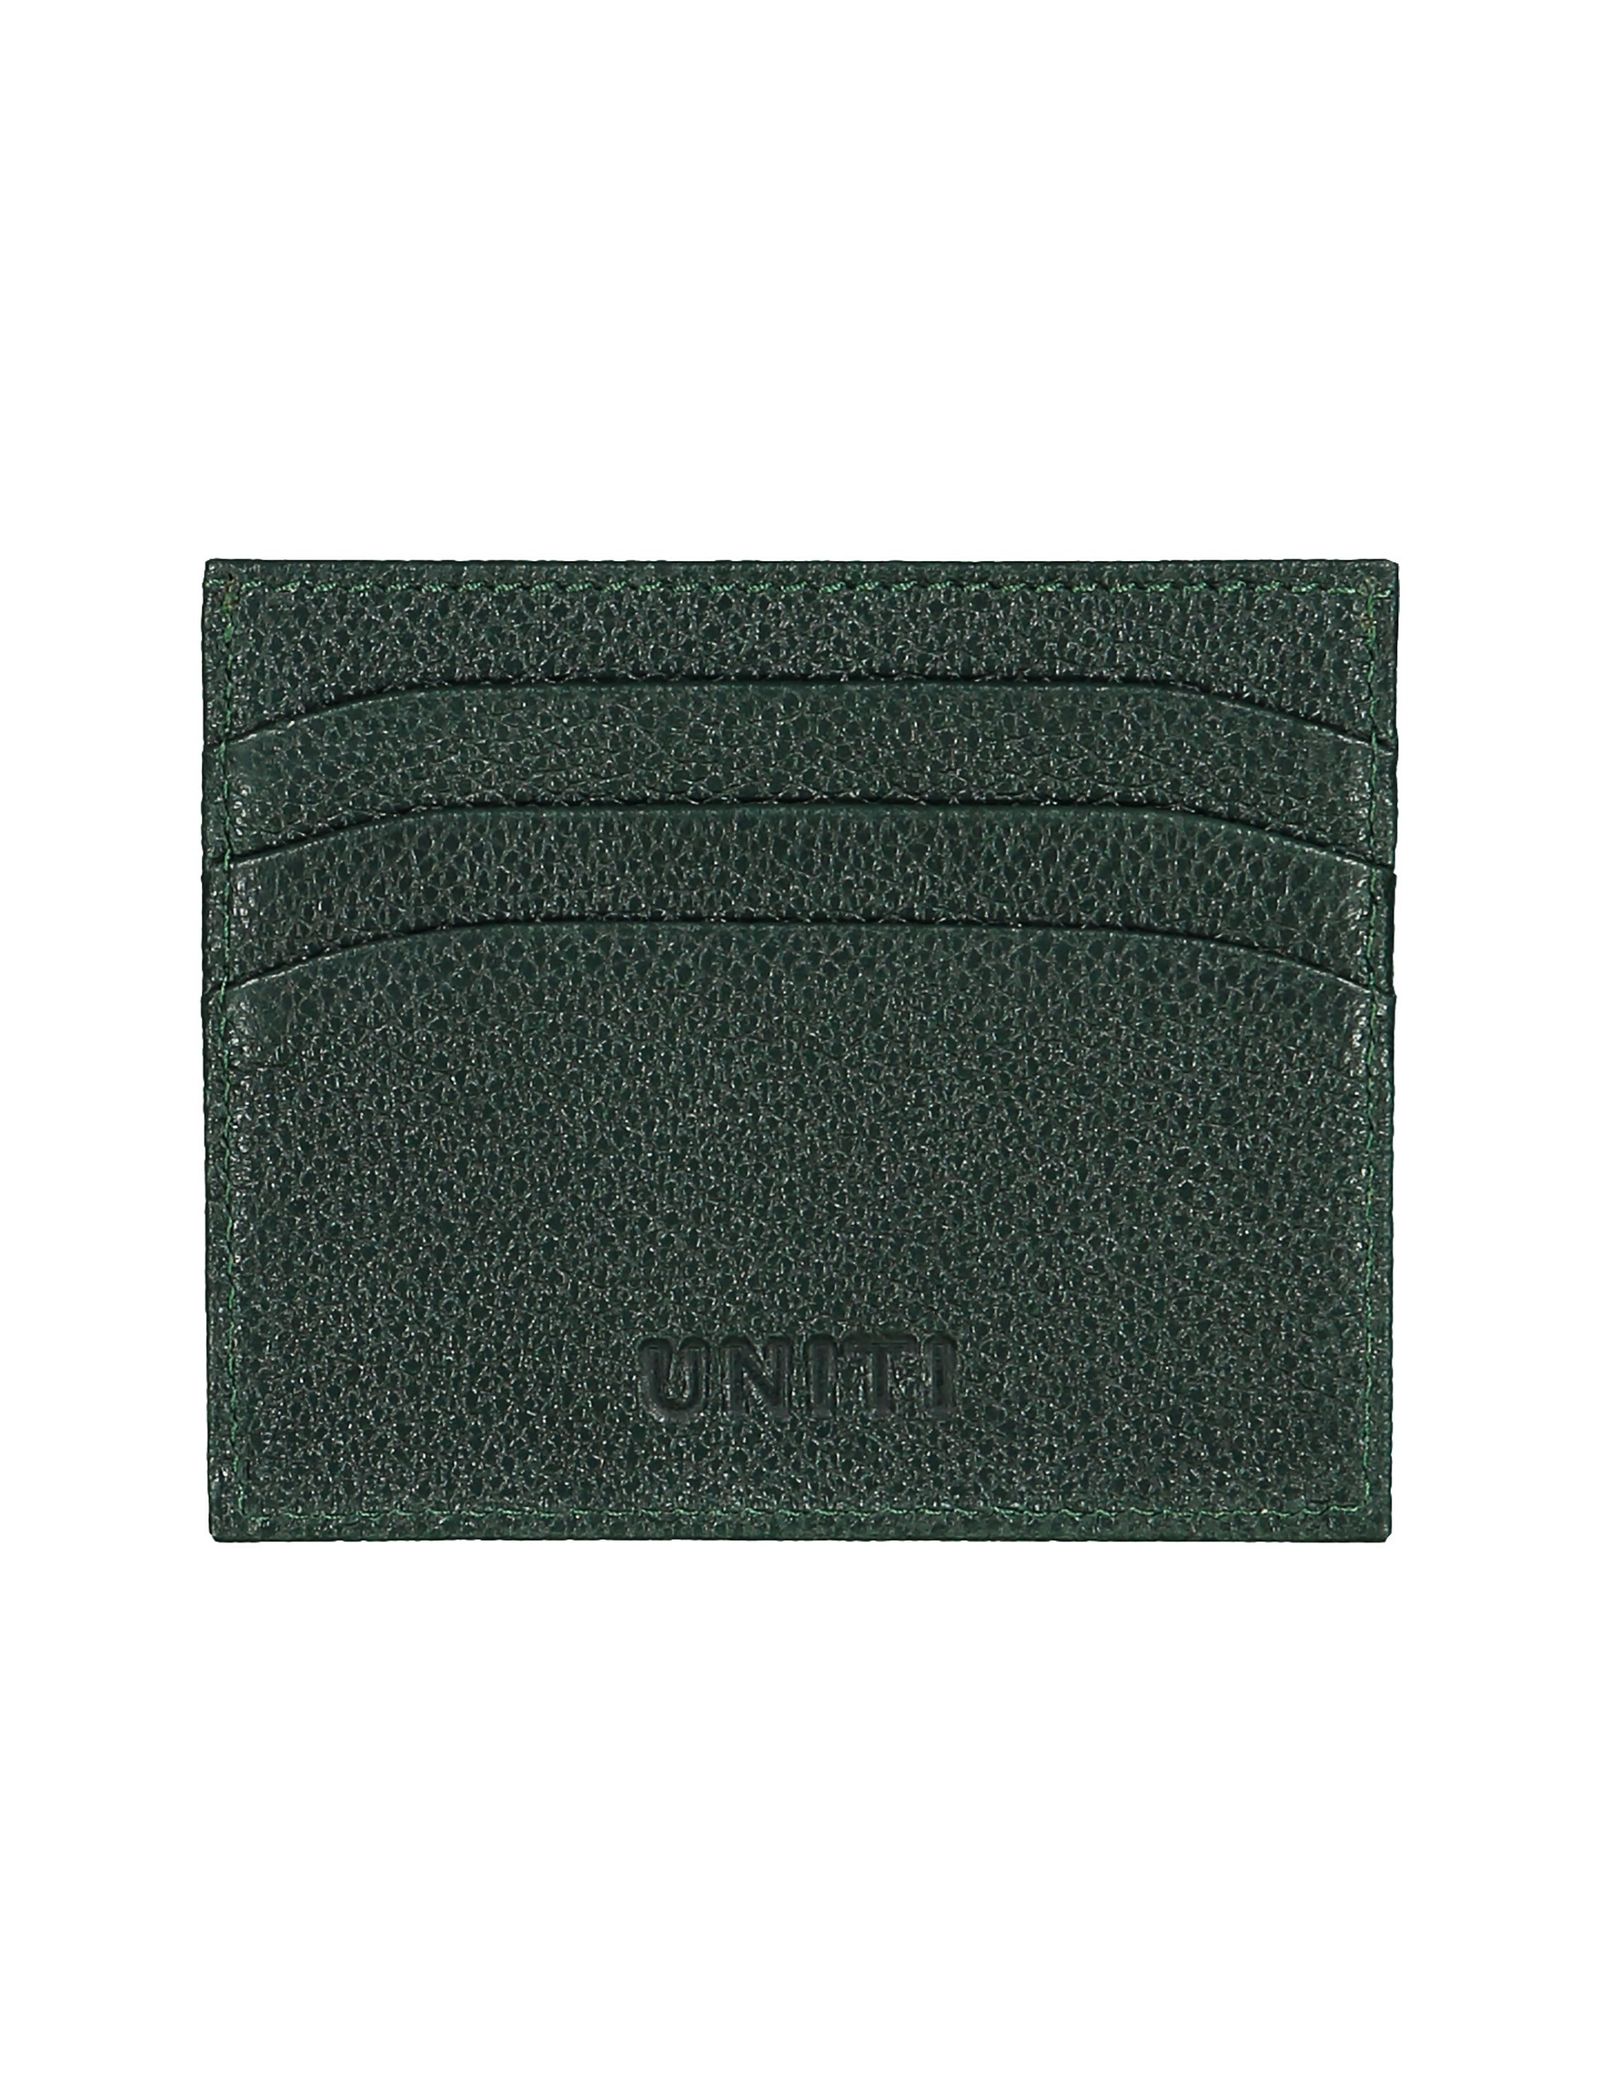 کیف کارت بزرگسال - یونیتی - سبز - 2